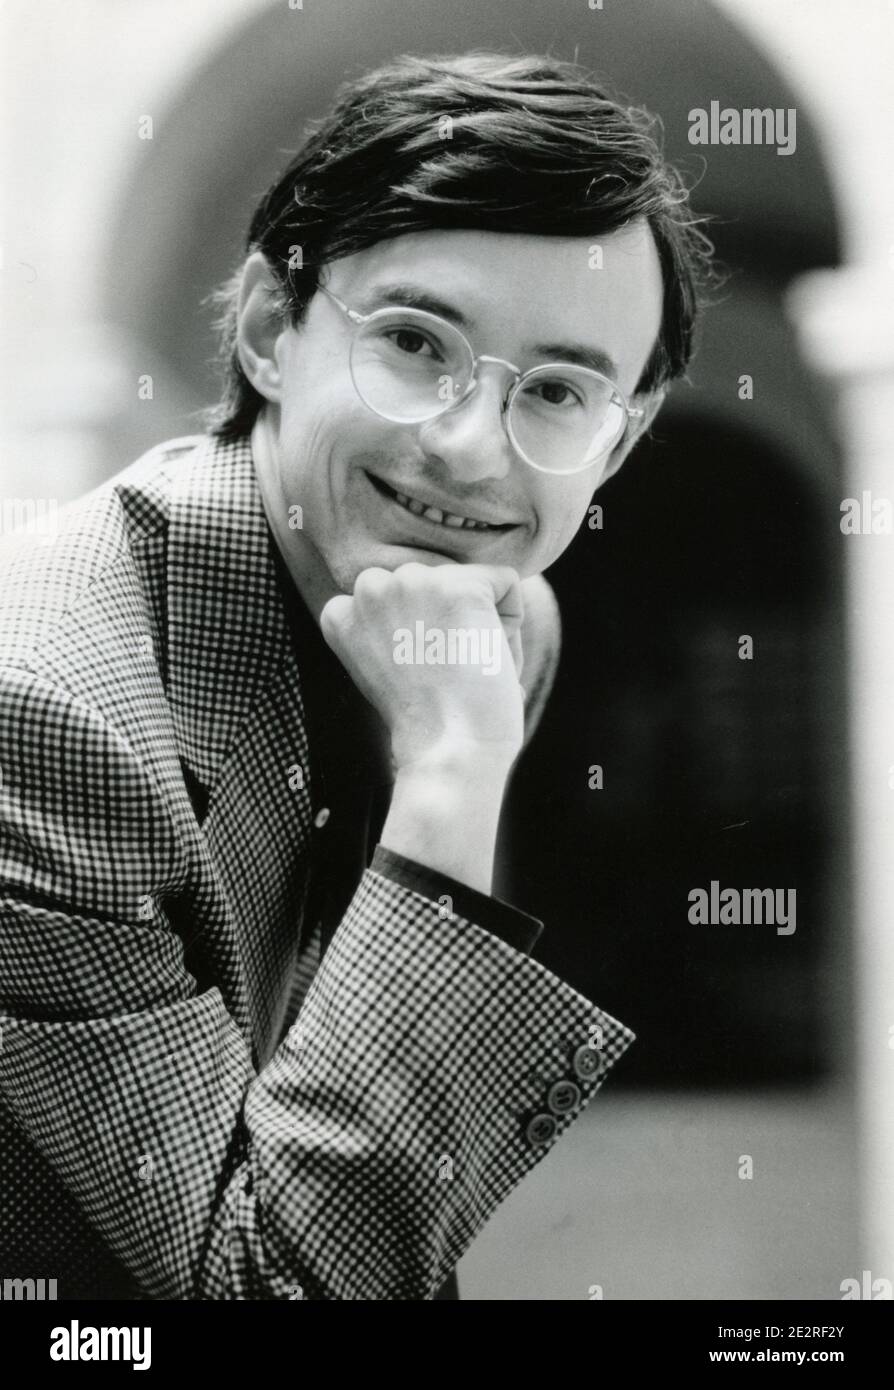 Italian historian Alessandro Barbero, 2000s Stock Photo - Alamy